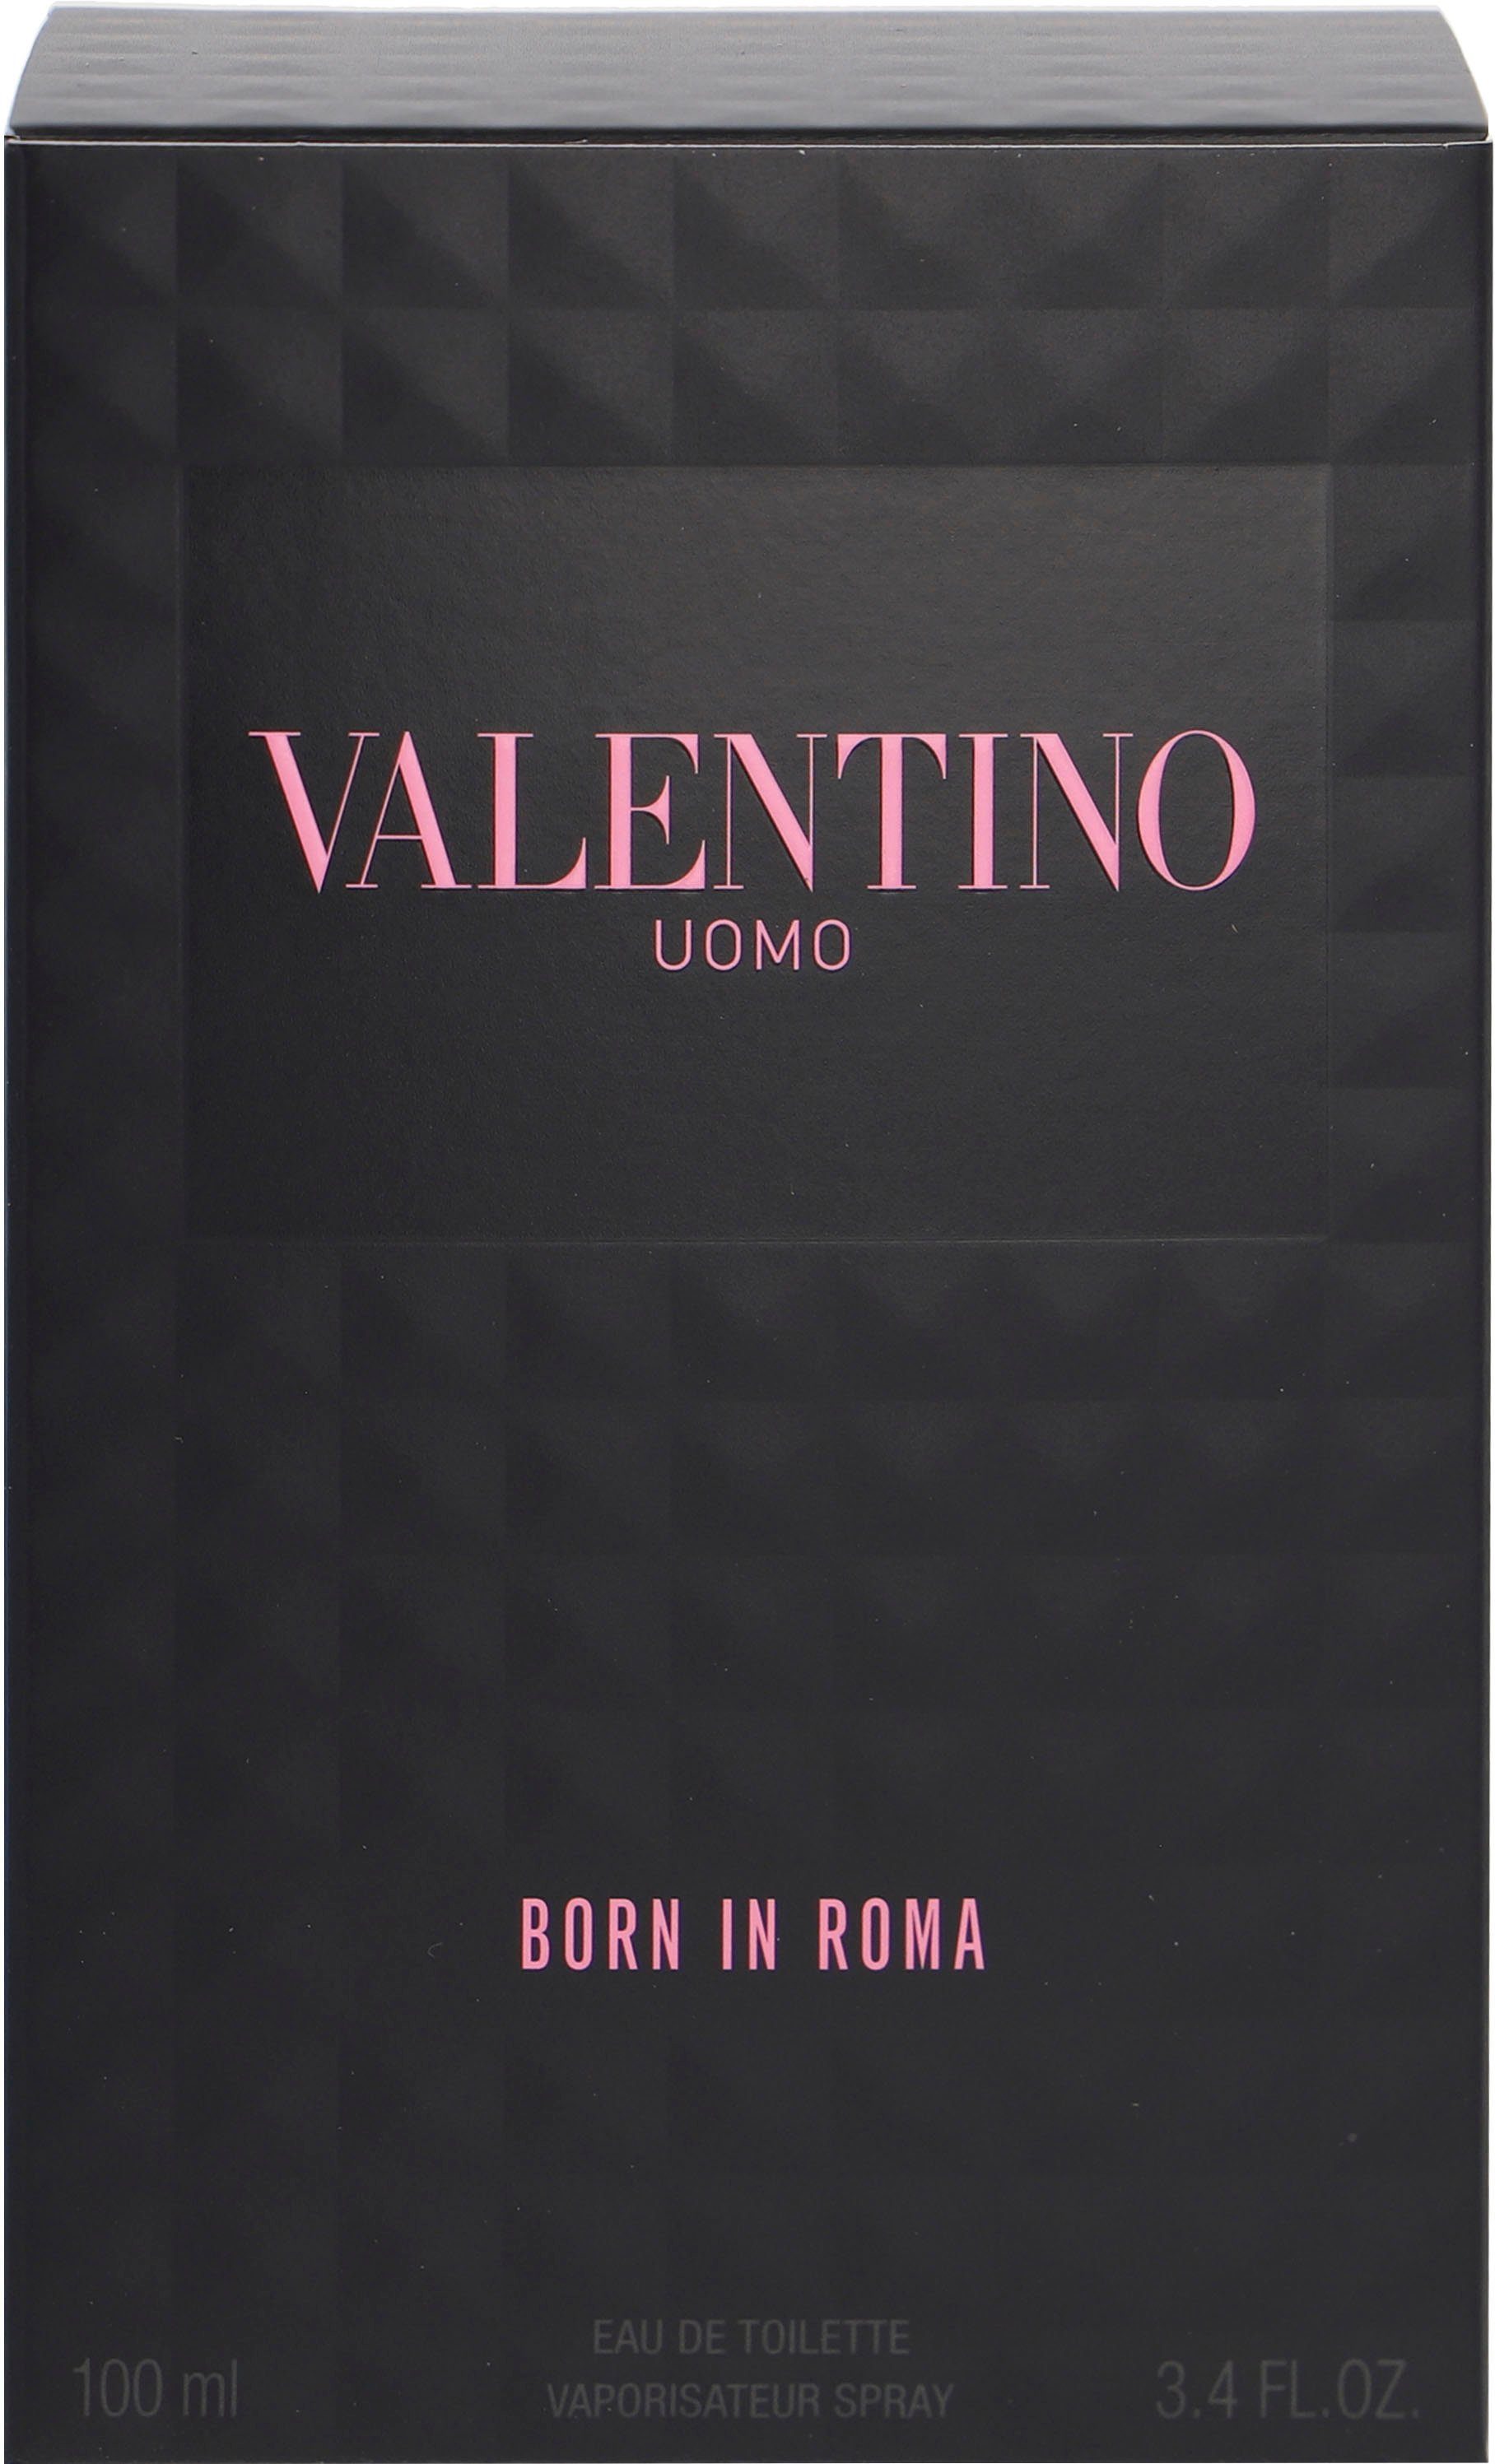 Uomo Born Toilette Roma Valentino de In Eau